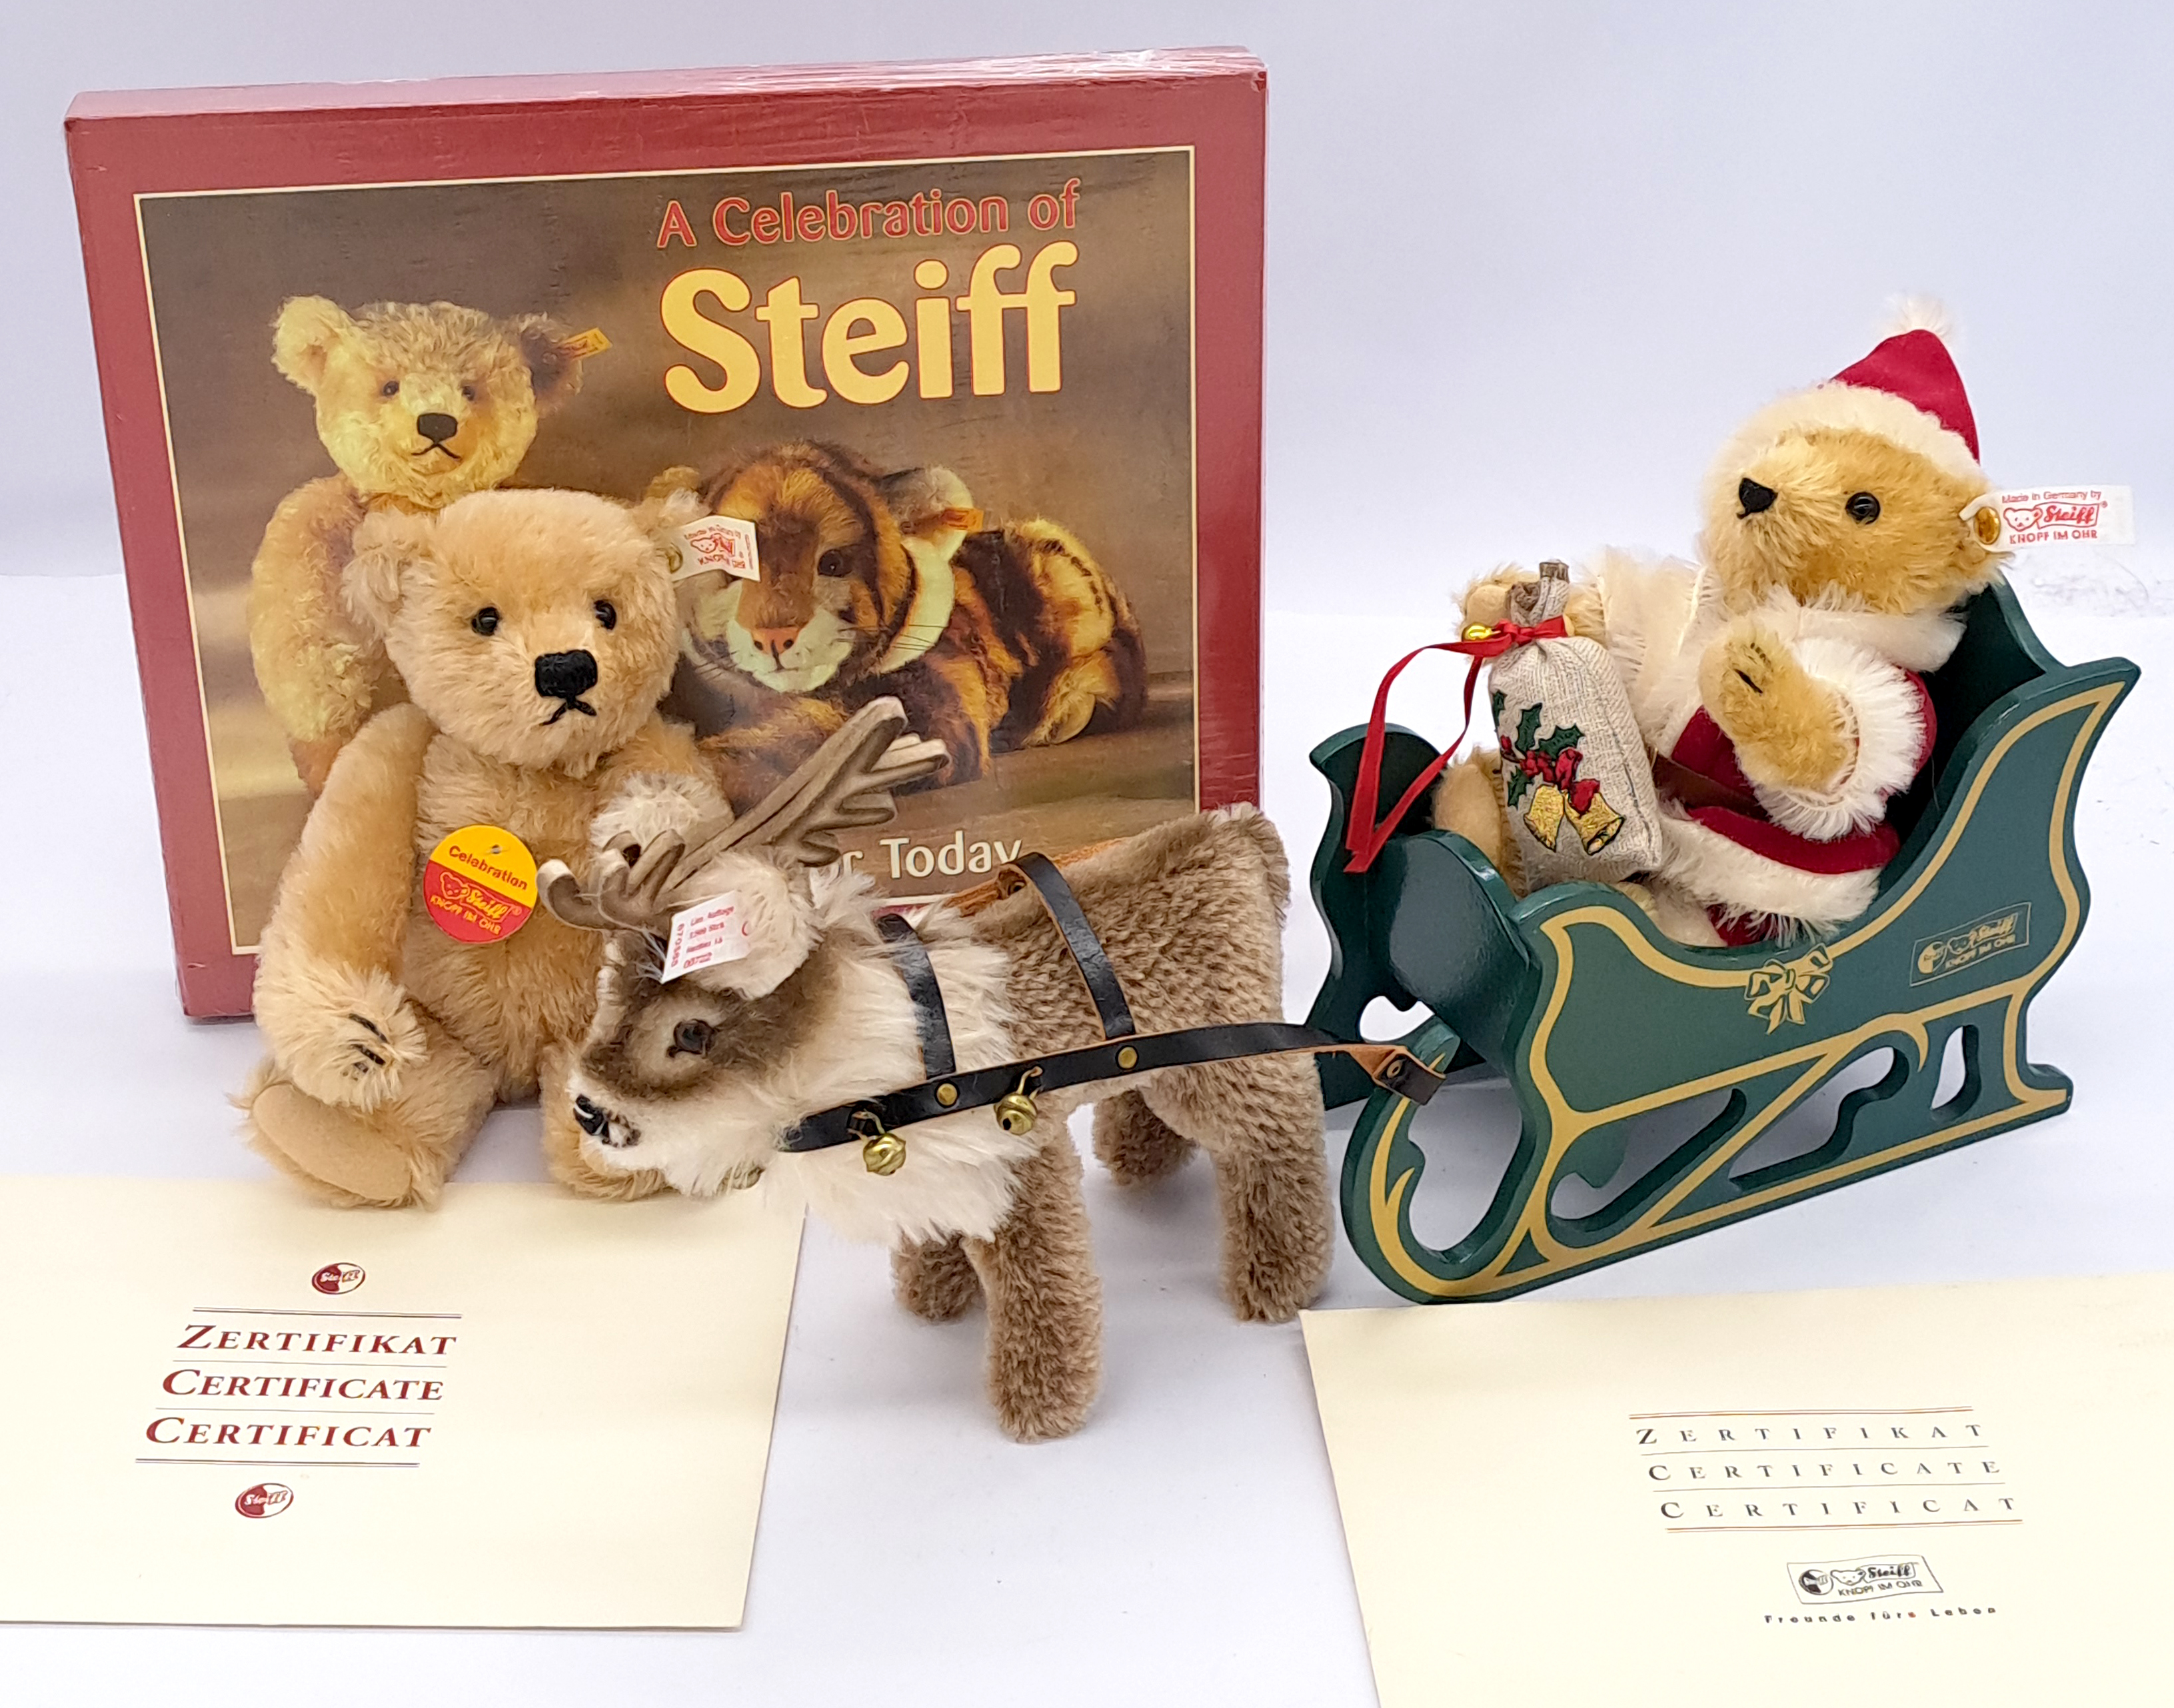 Steiff Father Christmas Teddy Bear with Reindeer, plus "A Celebration of Steiff" teddy bear and book